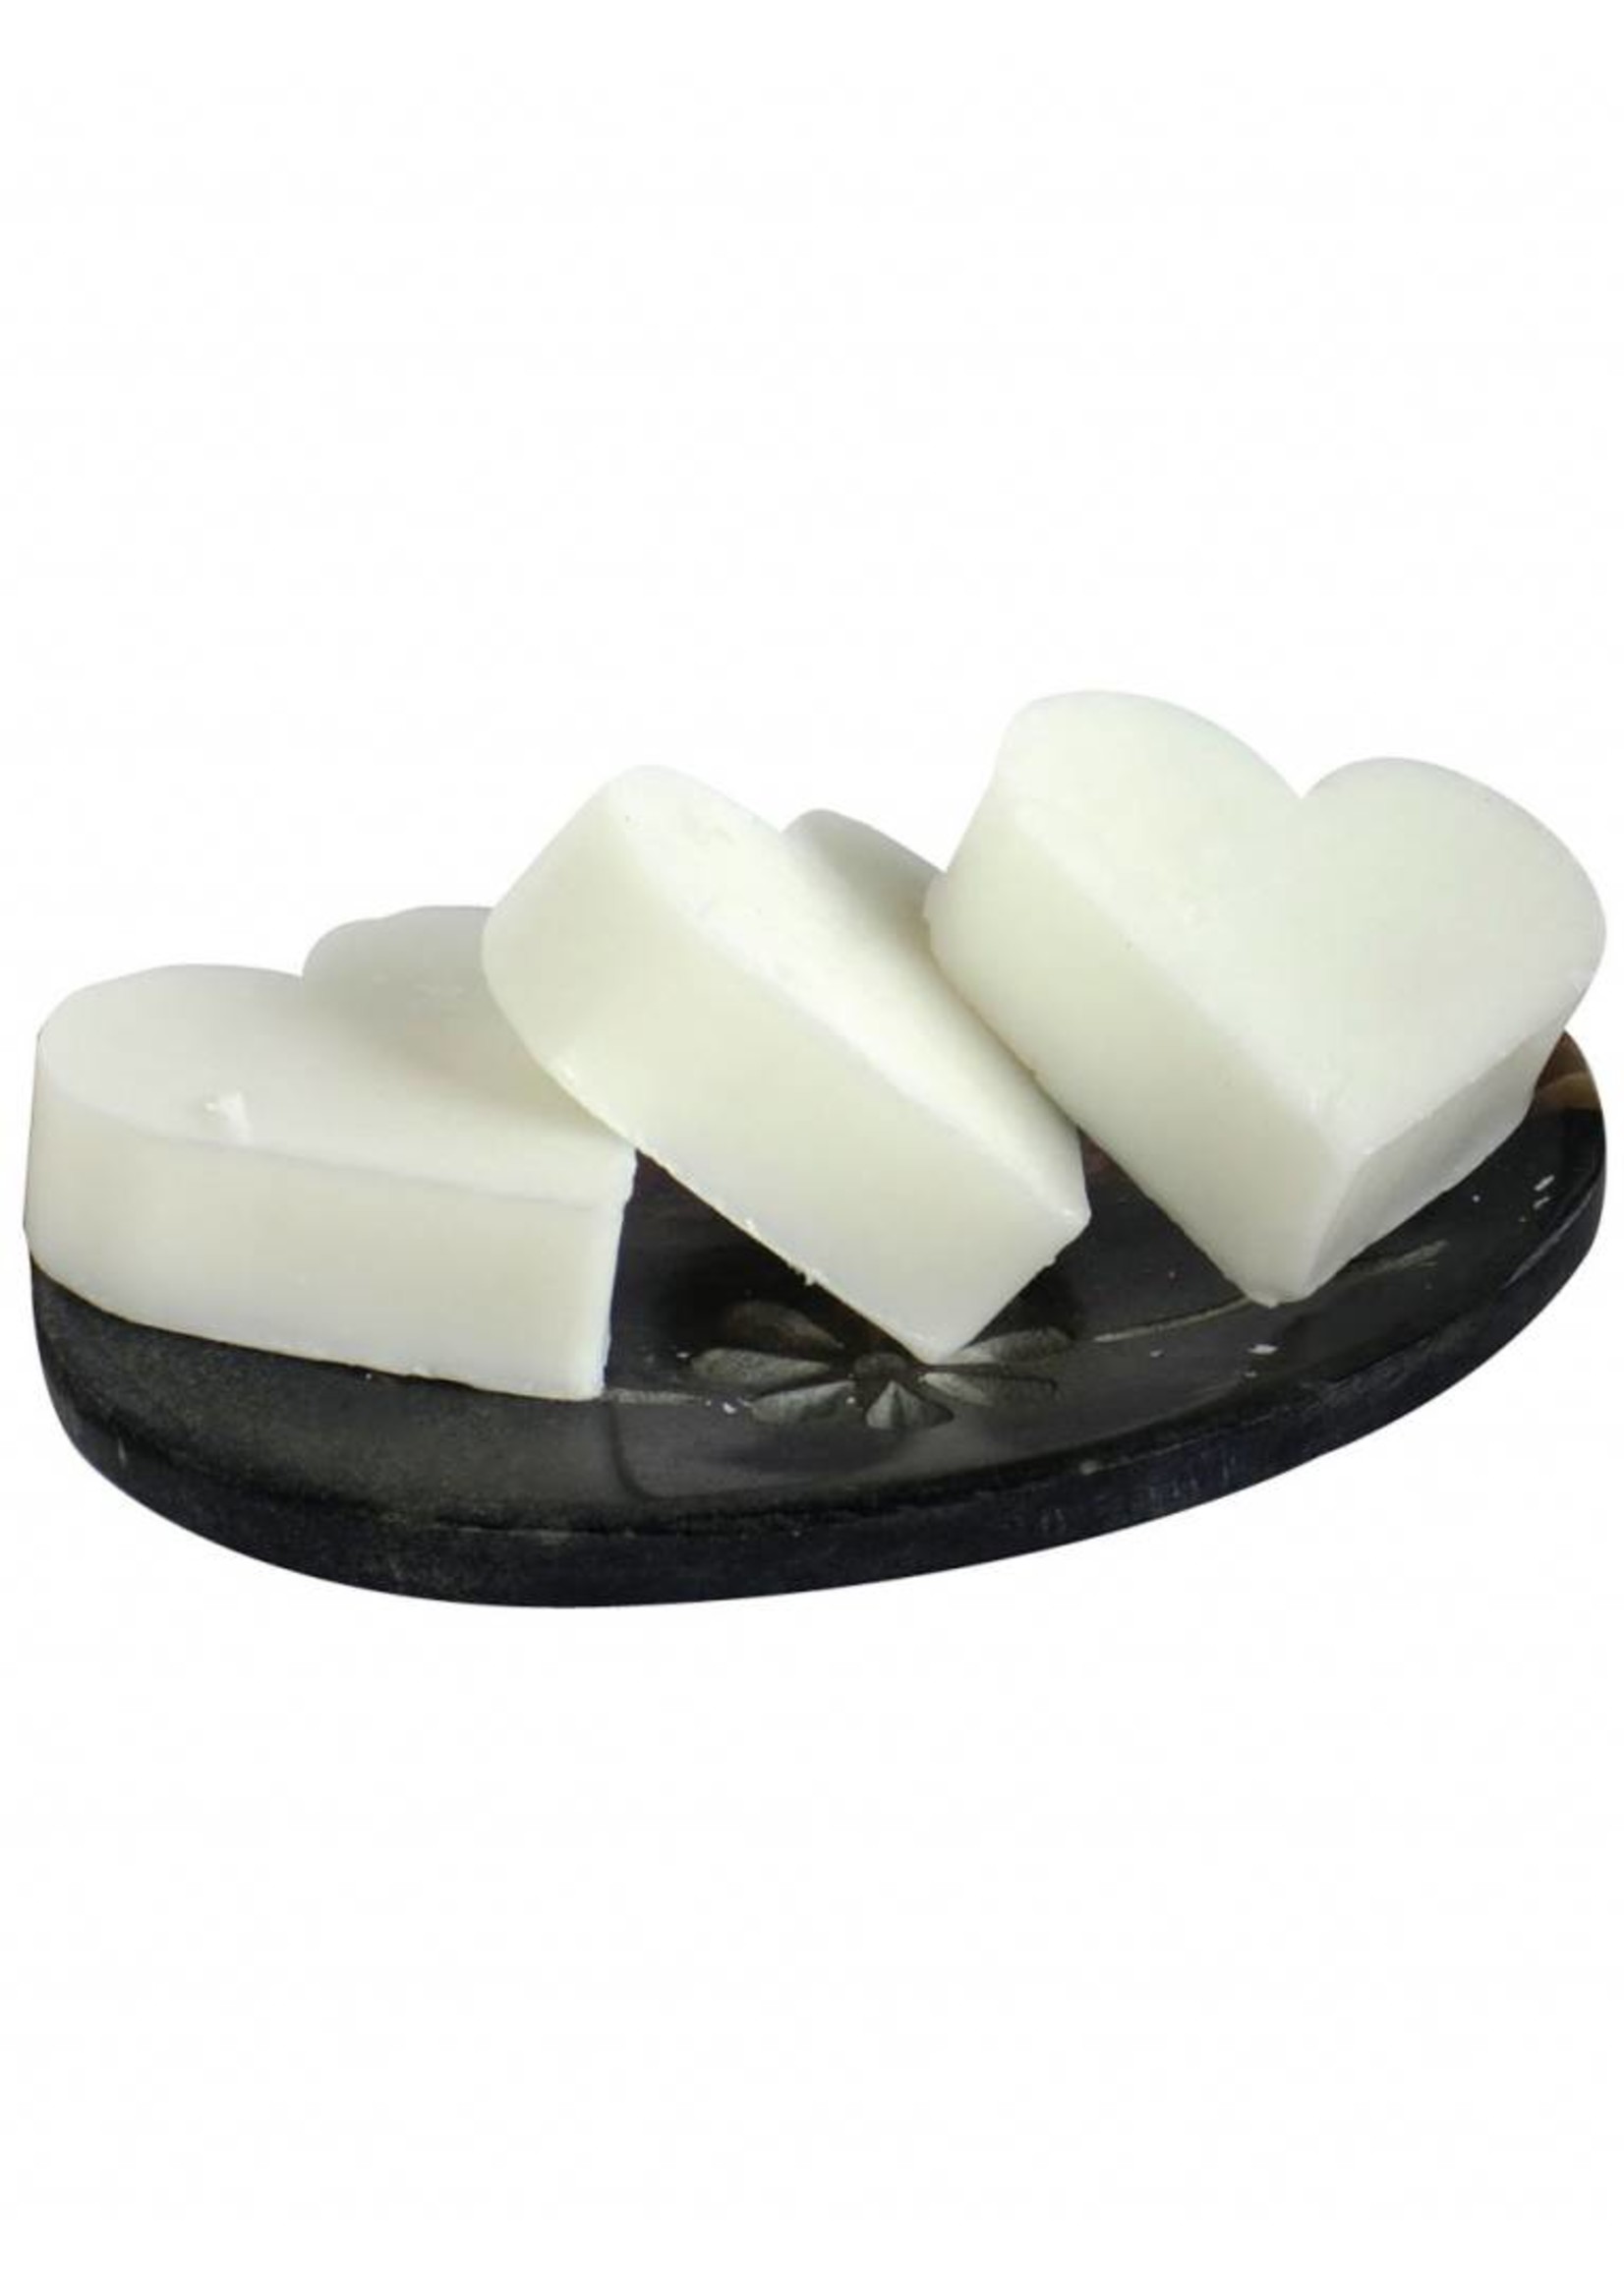 The English Soap Company White Jasmine & Sandalwood